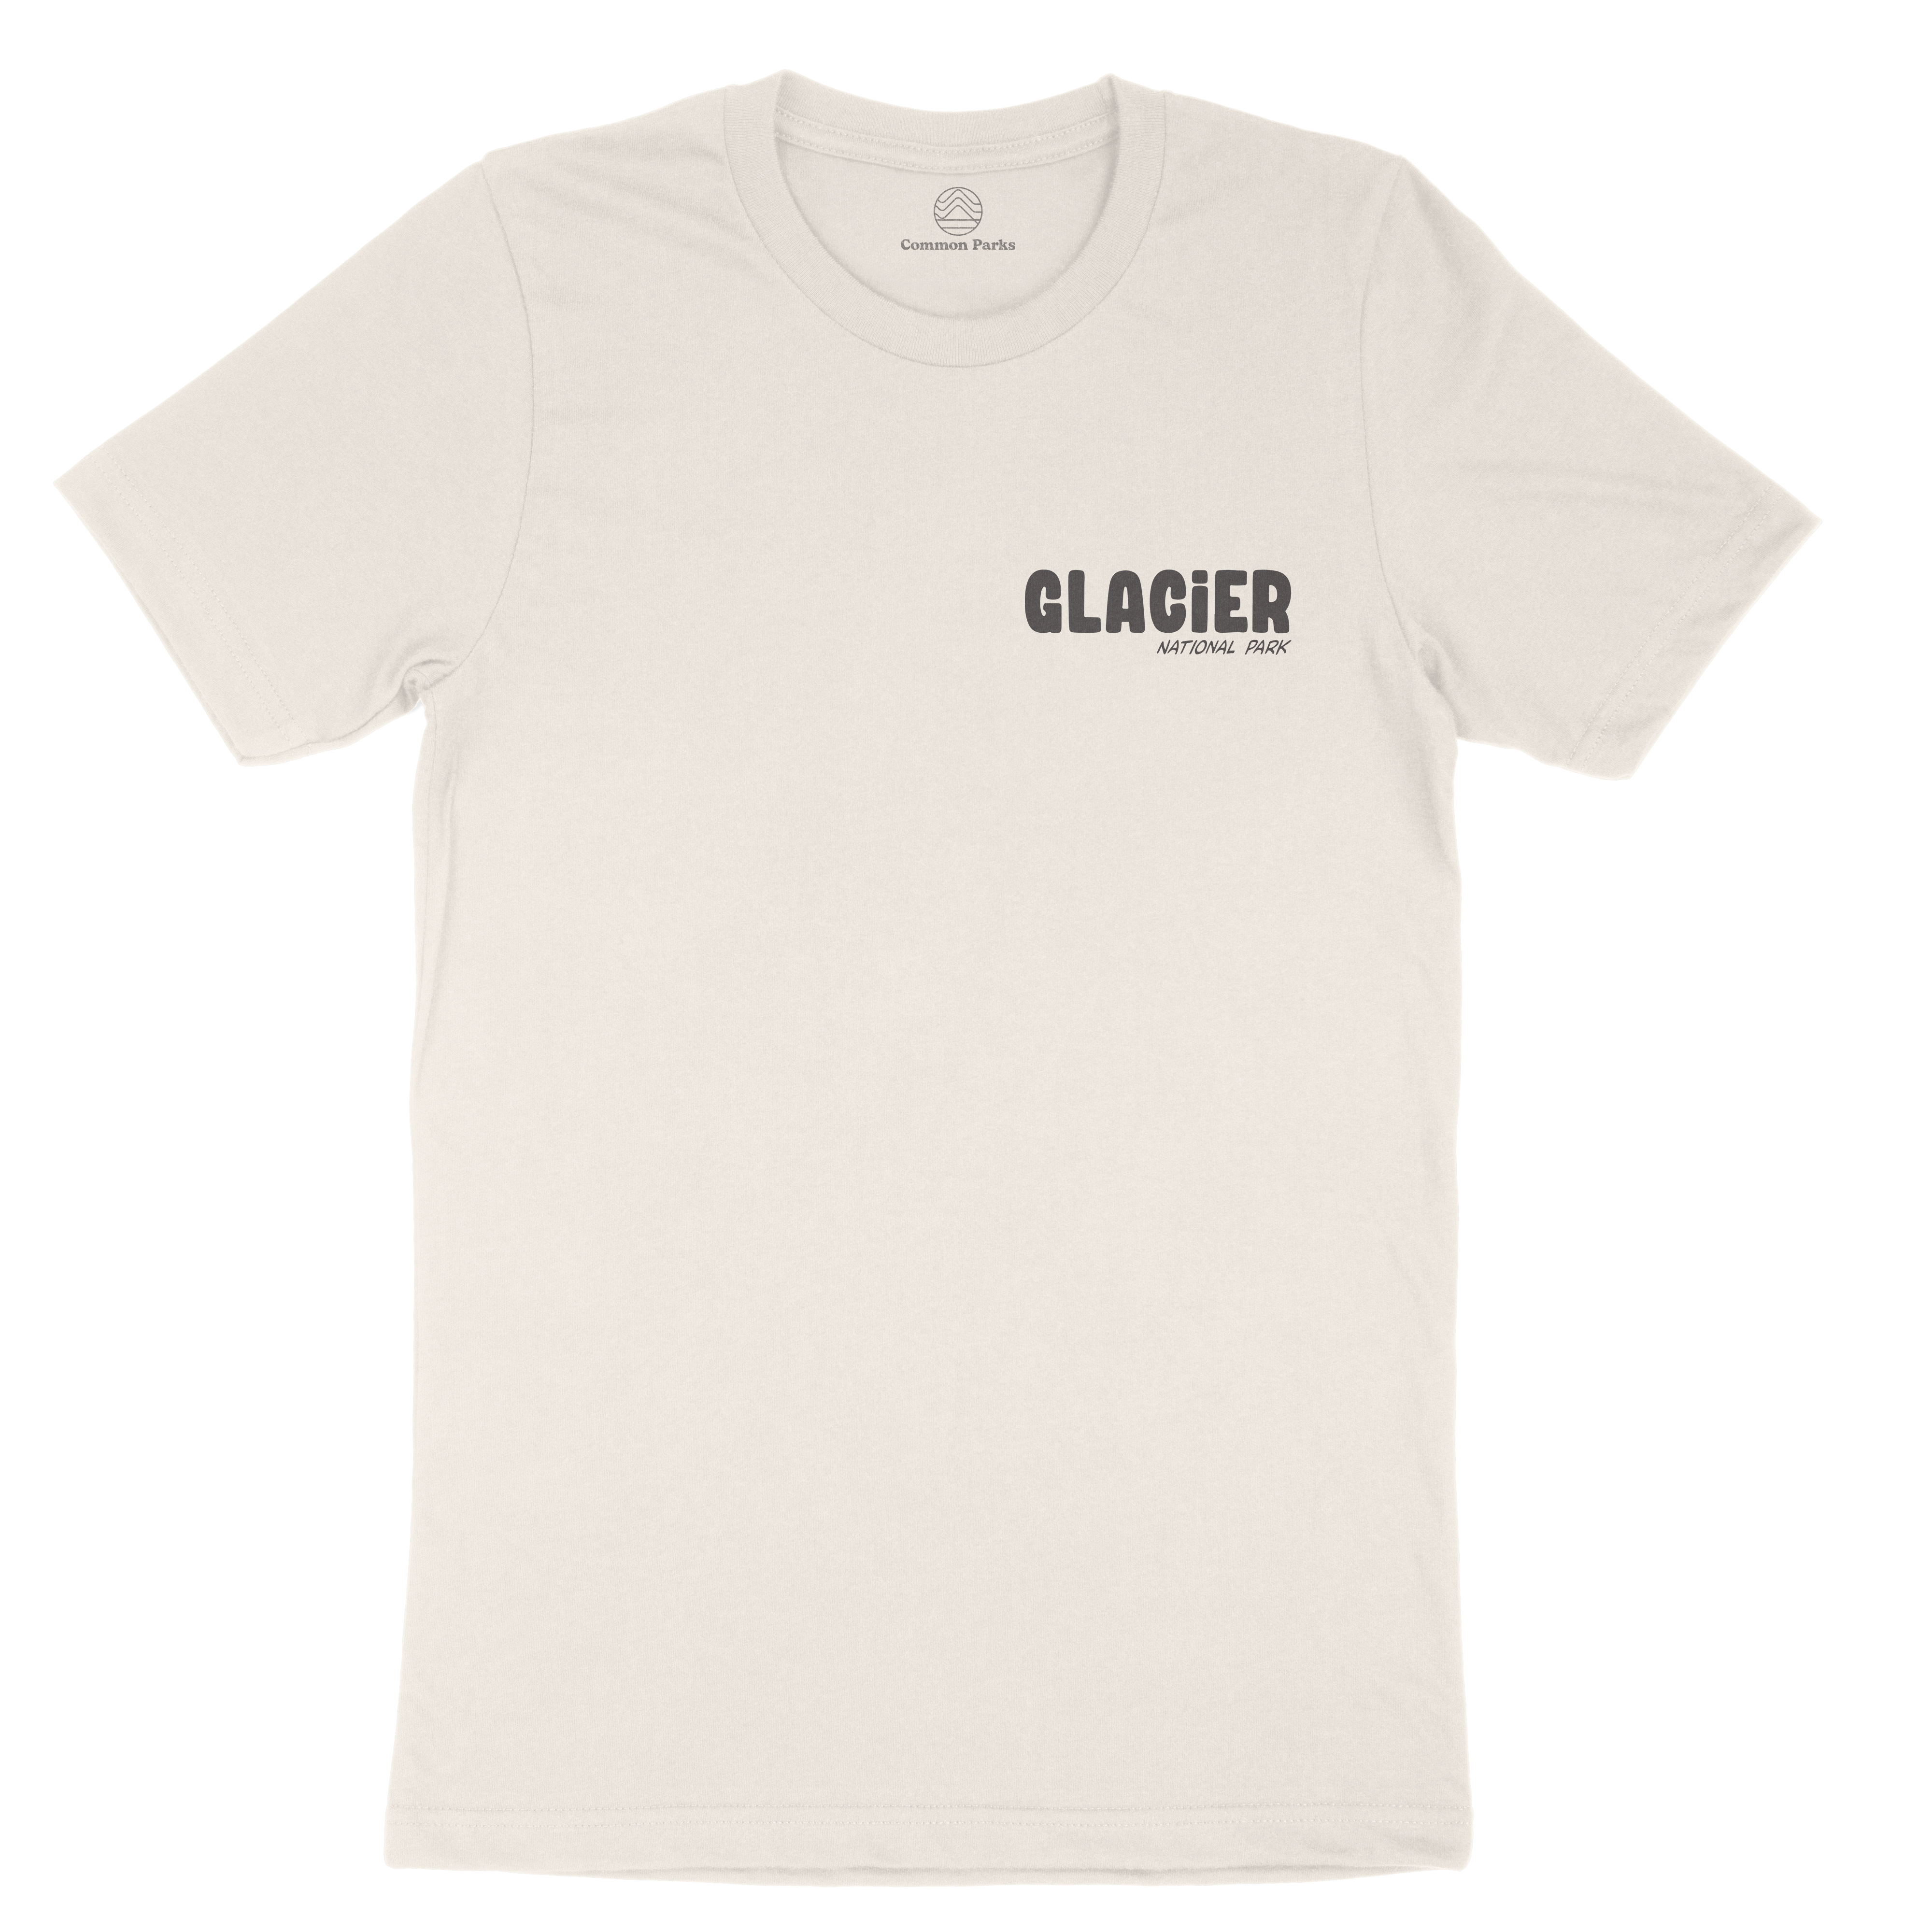 Glacier T-Shirt - Bold – Common Parks